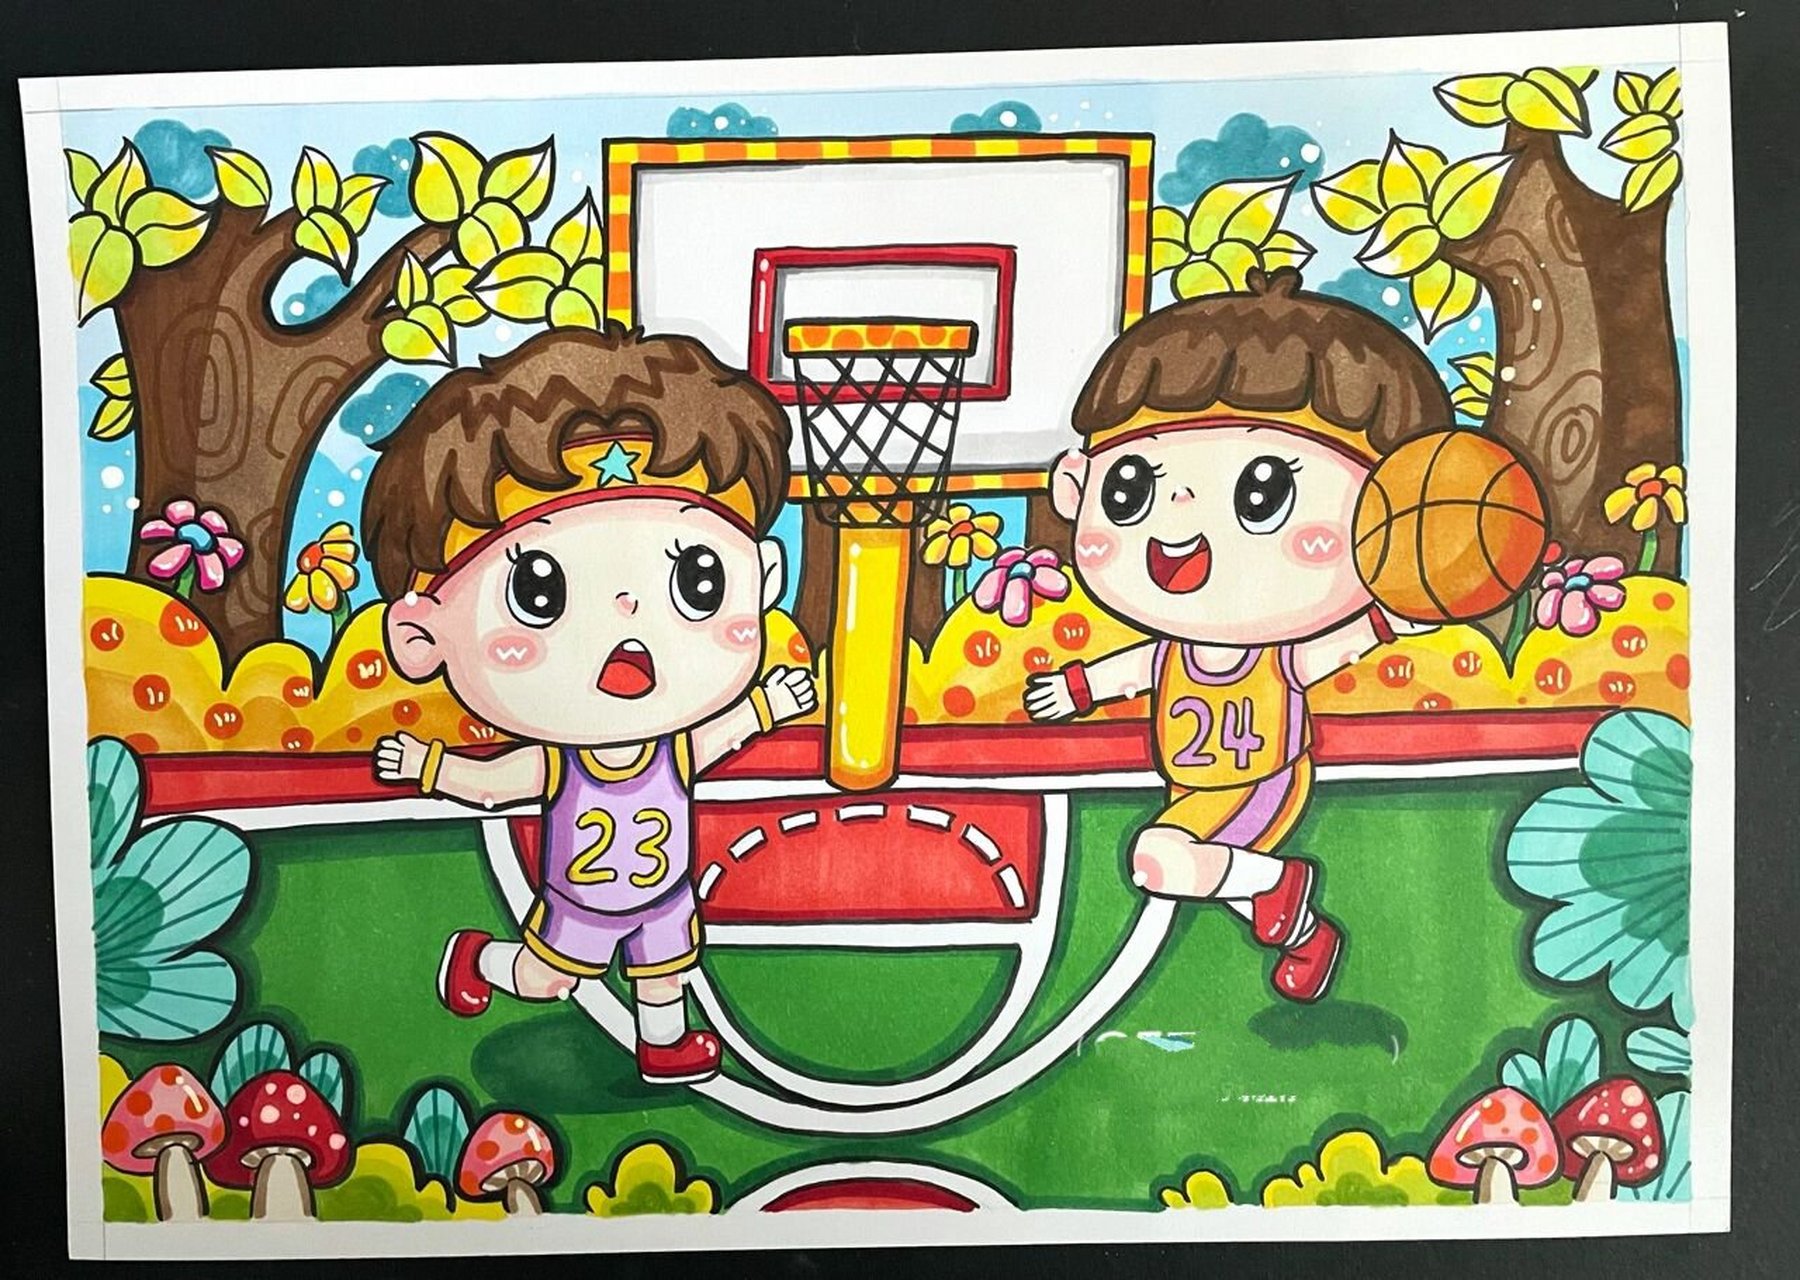 两个人打篮球怎么画图片